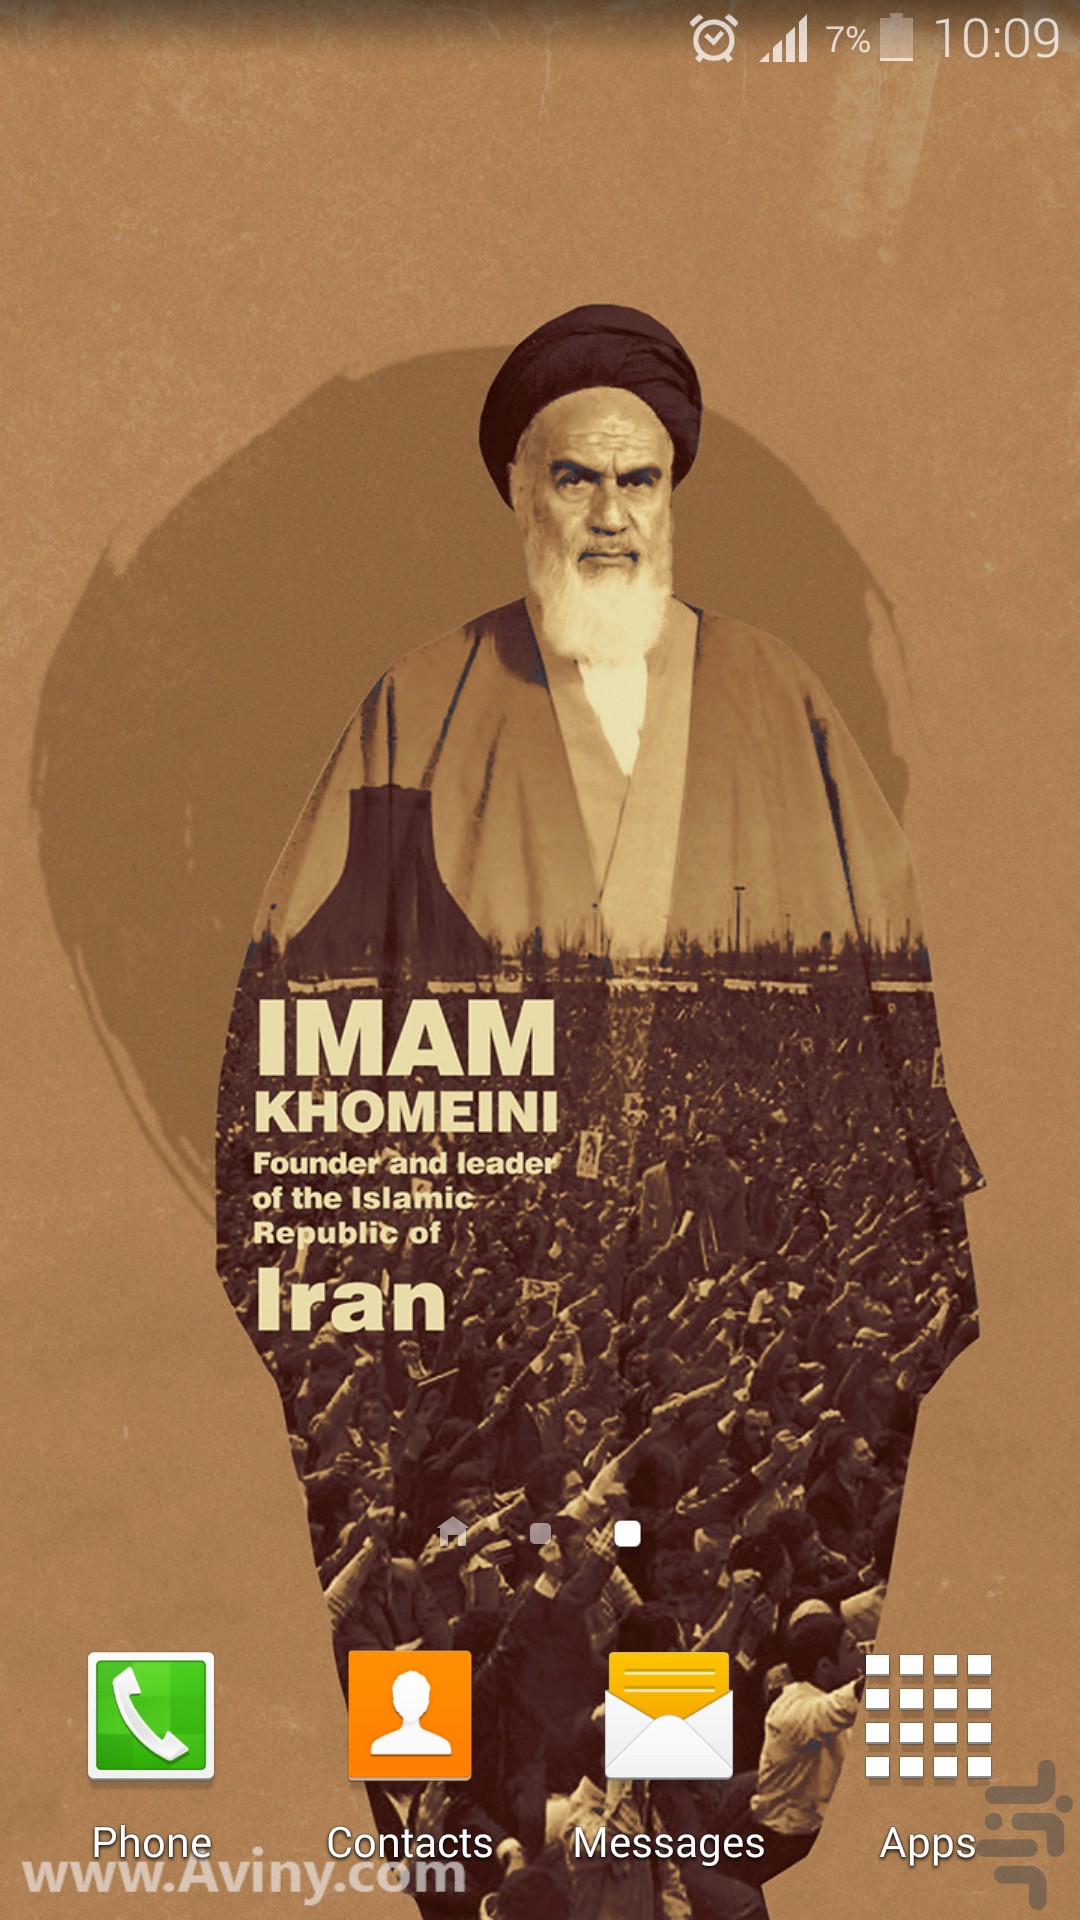 Iran: How Ayatollah Khamenei became its most powerful man - BBC News